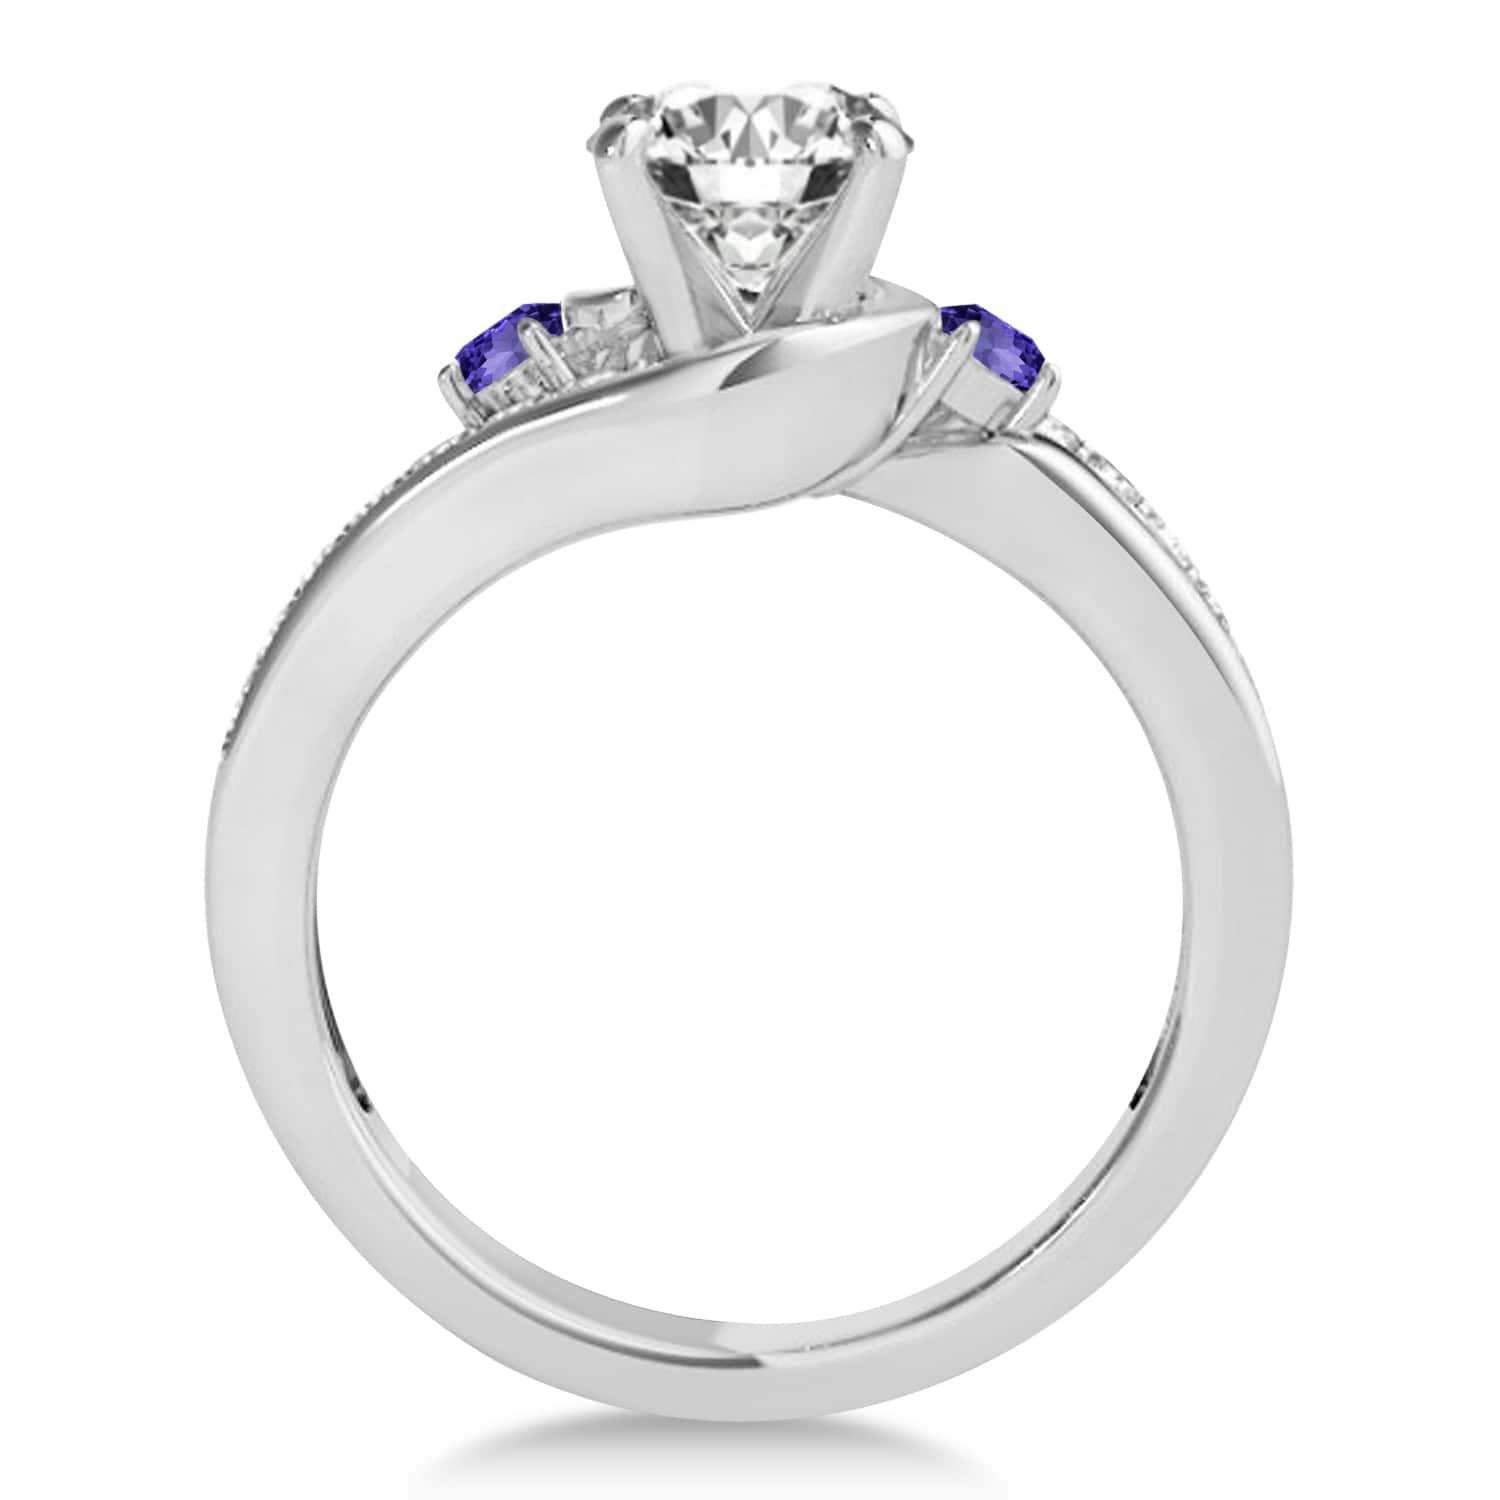 Swirl Design Tanzanite & Diamond Engagement Ring Setting 18k White Gold 0.38ct